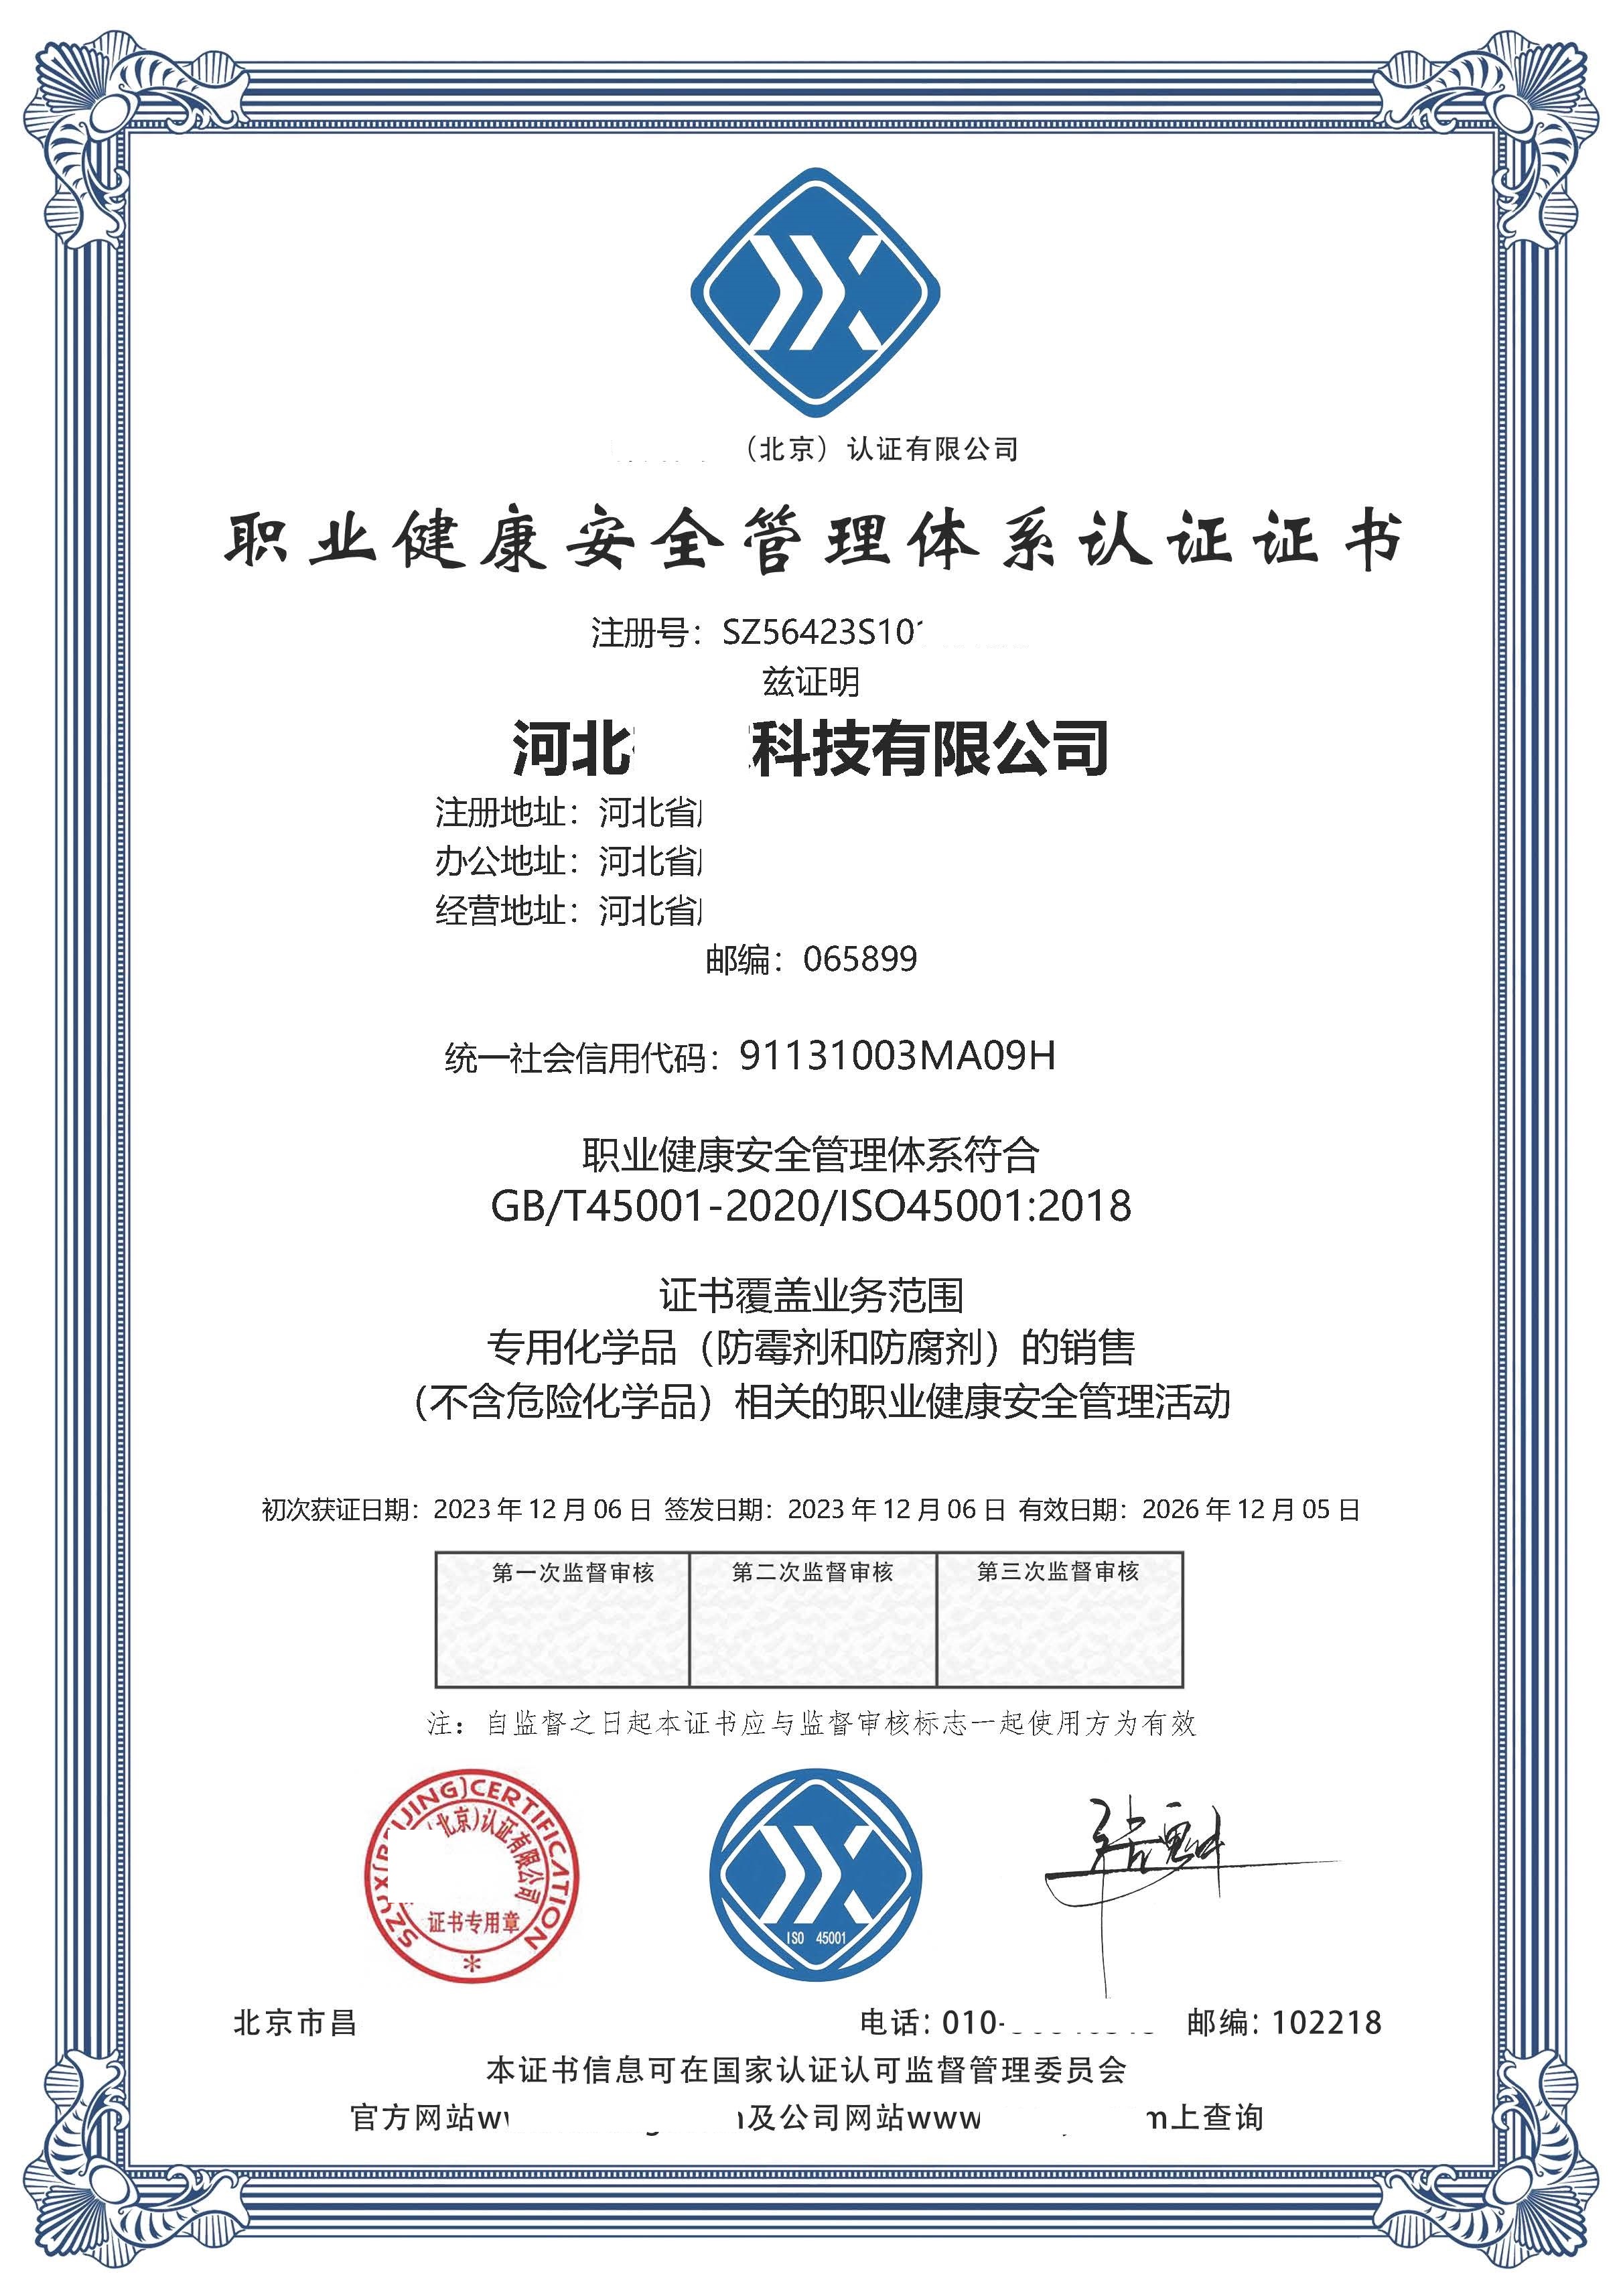 恭喜  河北**科技有限公司  获得ISO9001质量、ISO14001环境、ISO45001职业健康安全管理体系认证证书